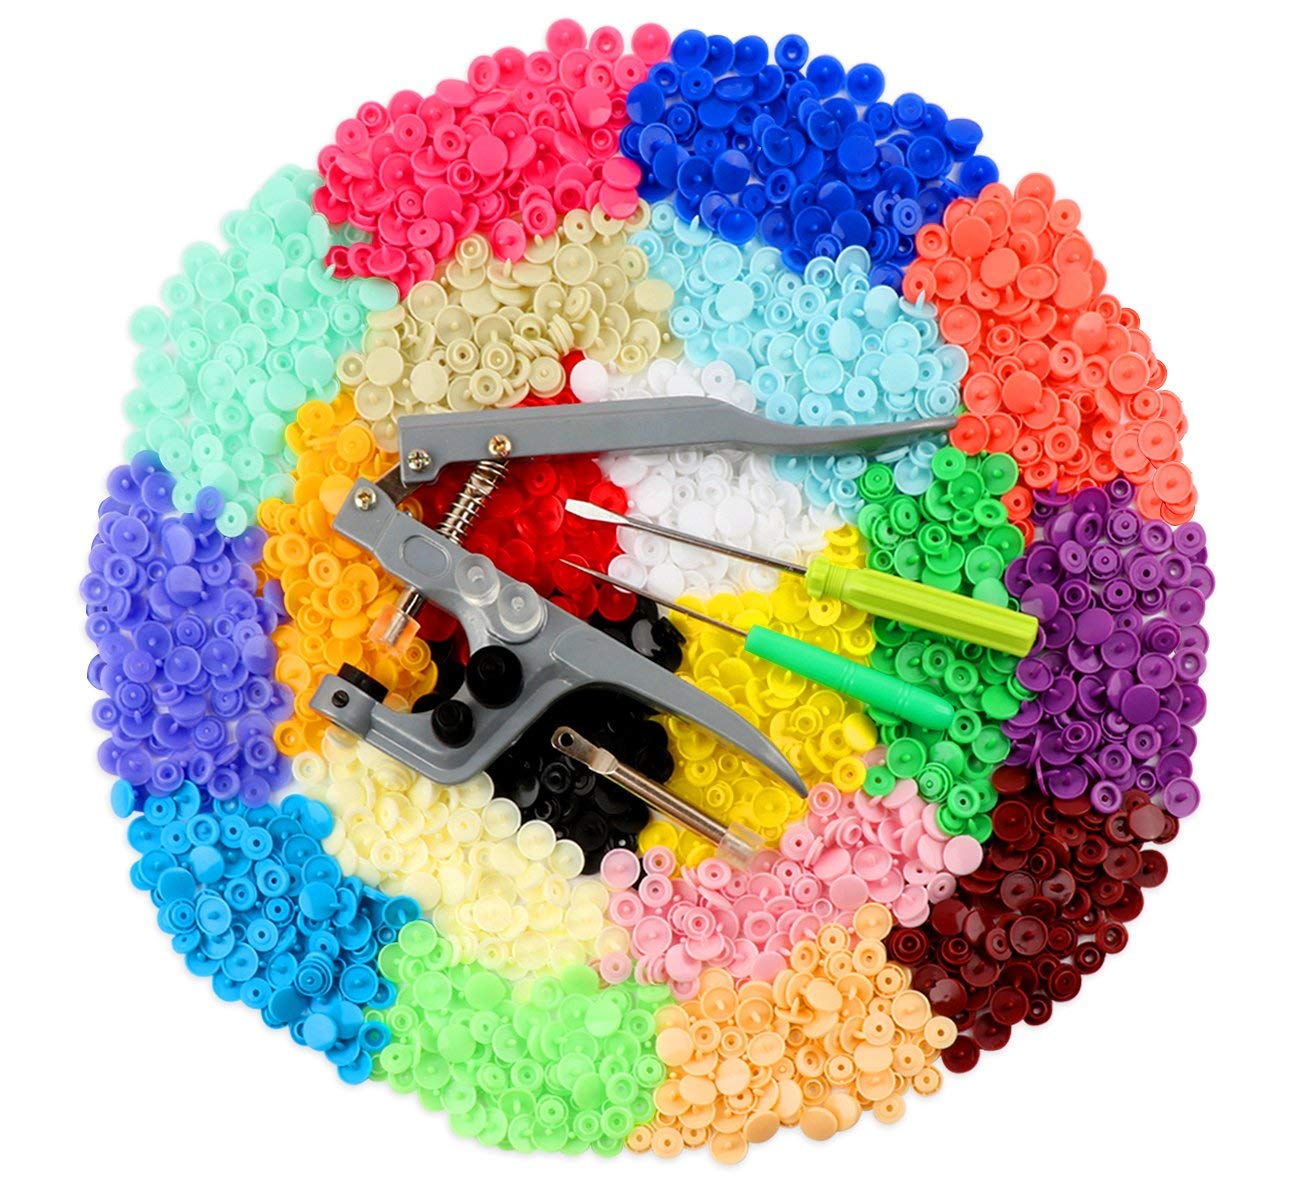 Bottoni automatici in metallo kit di bottoni automatici per lavori di artigianato o riparazione con 4 strumenti 100 pezzi in totale 4 colori